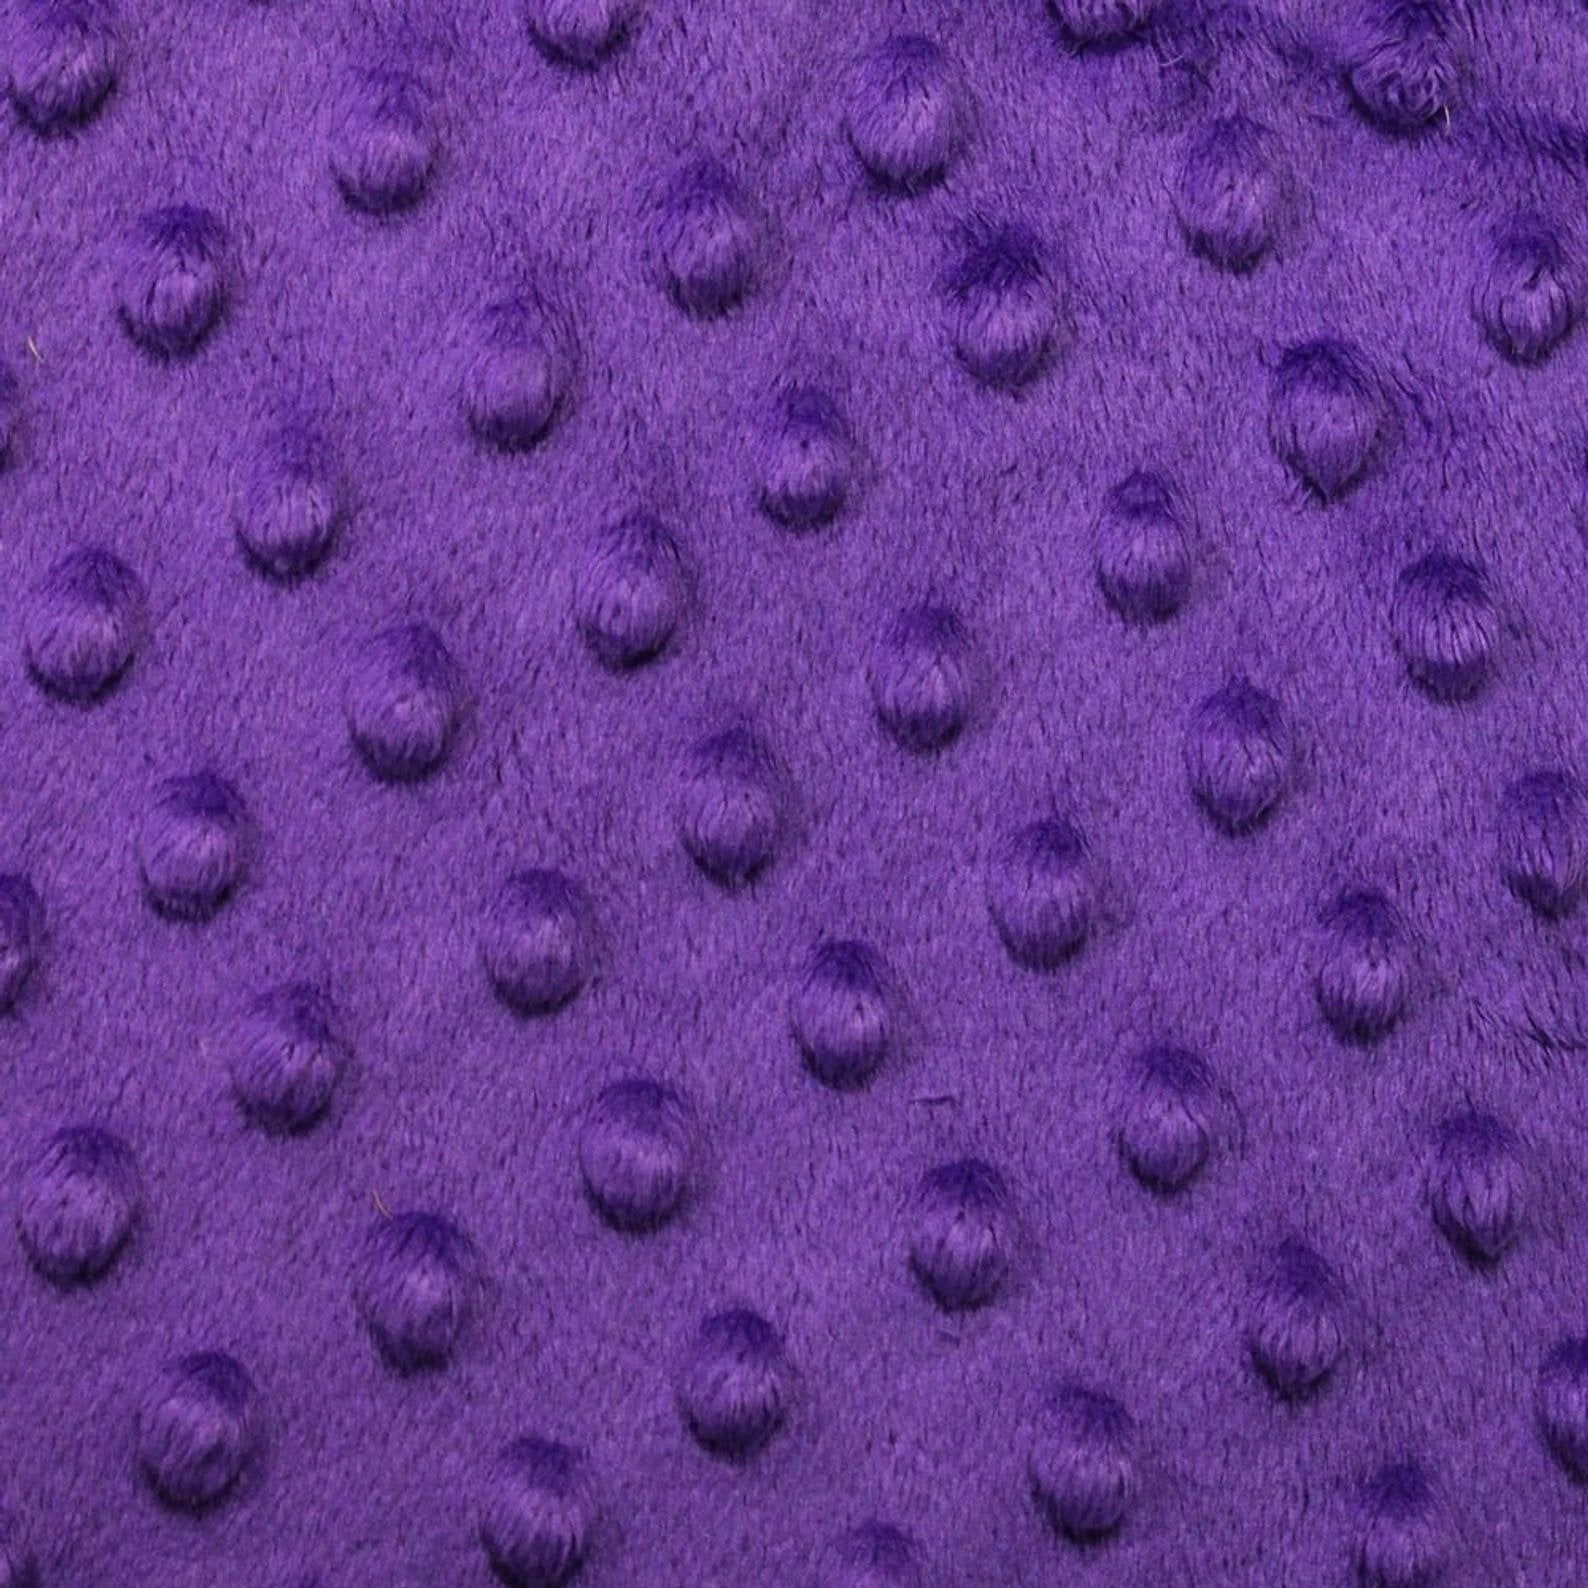 Luxury Purple Bubble Minky Polka Dot FabricICEFABRICICE FABRICSPurpleLuxury Purple Bubble Minky Polka Dot Fabric ICEFABRIC